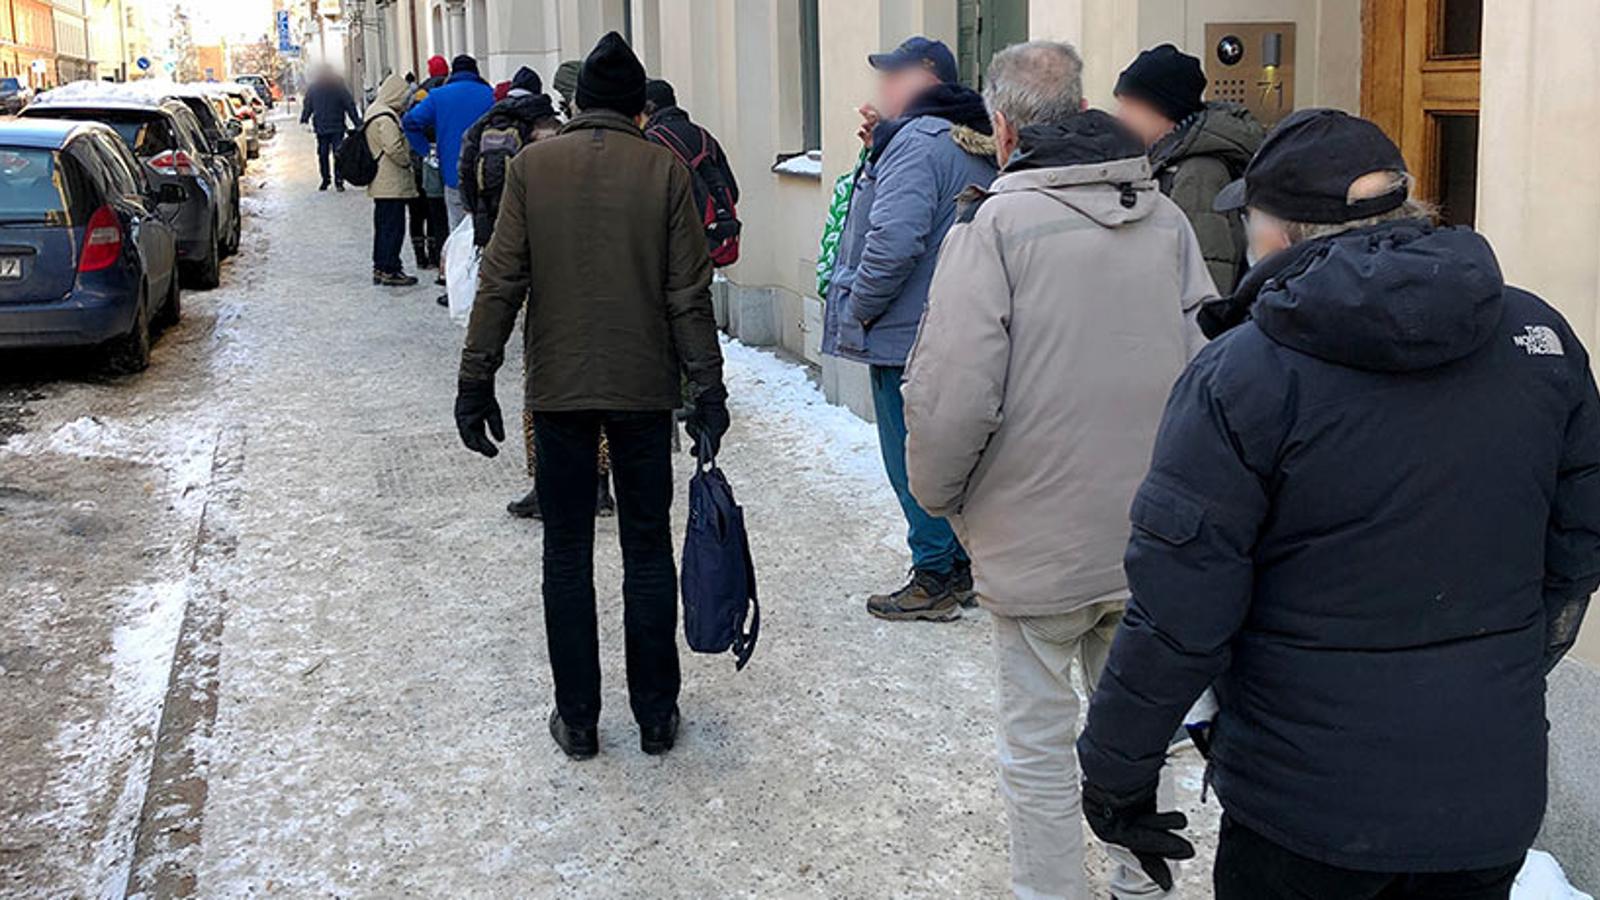 En lång kö av hjälpsökande som står längs med en gata utanför Templet i Stockholm. Personerna i kön står med ryggtavlorna mot kameran.